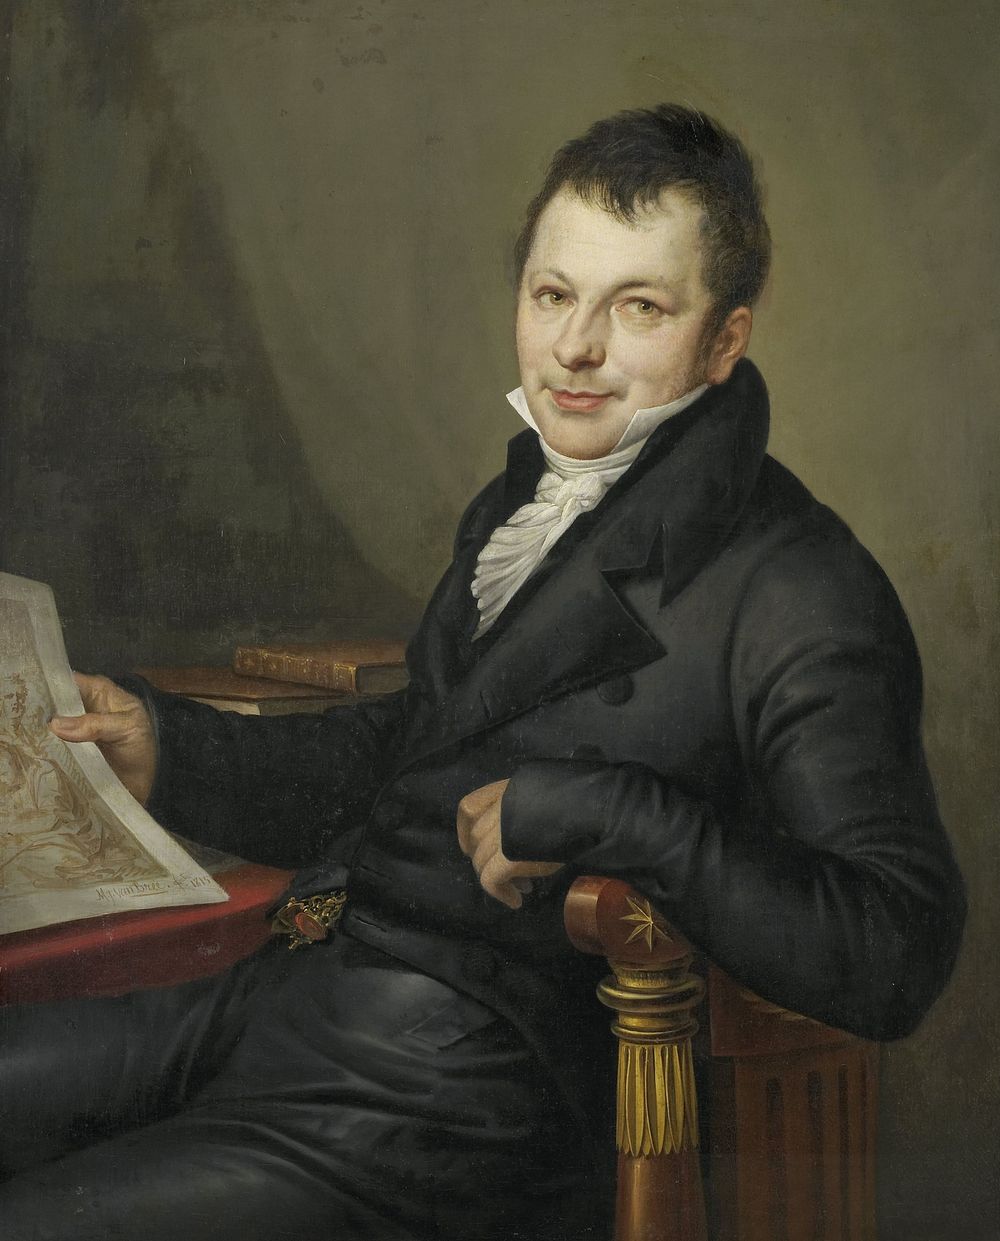 Johannes Hermanus Molkenboer(1773-1834). Art Collector (1815) by Mattheus Ignatius van Bree